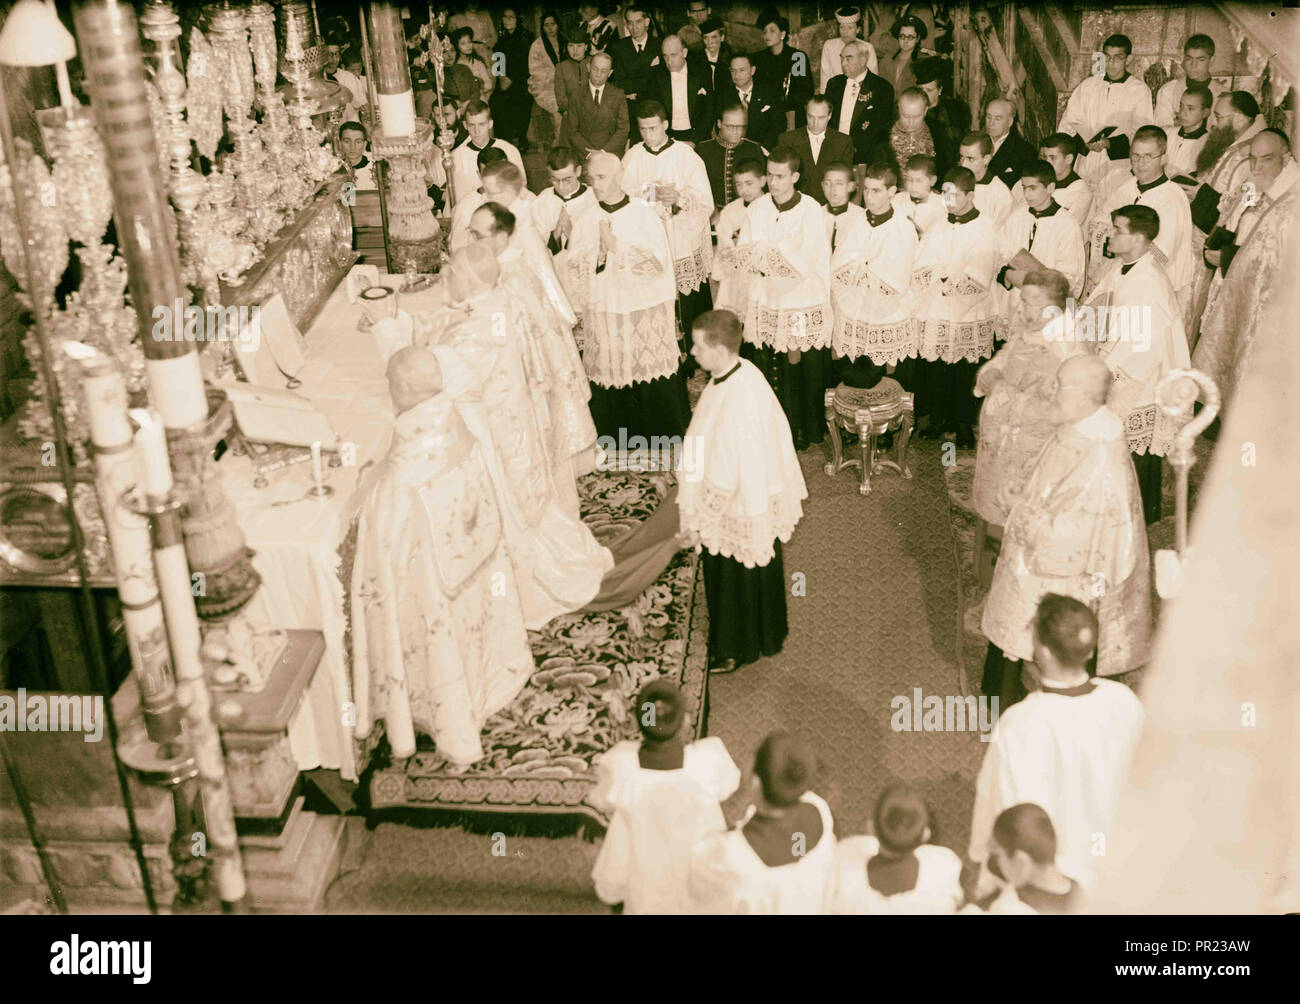 Kalender der religiösen Zeremonien in Jerusalem Ostern 1941 Ostern Altar vor dem Grab. Offertorium Stockfoto